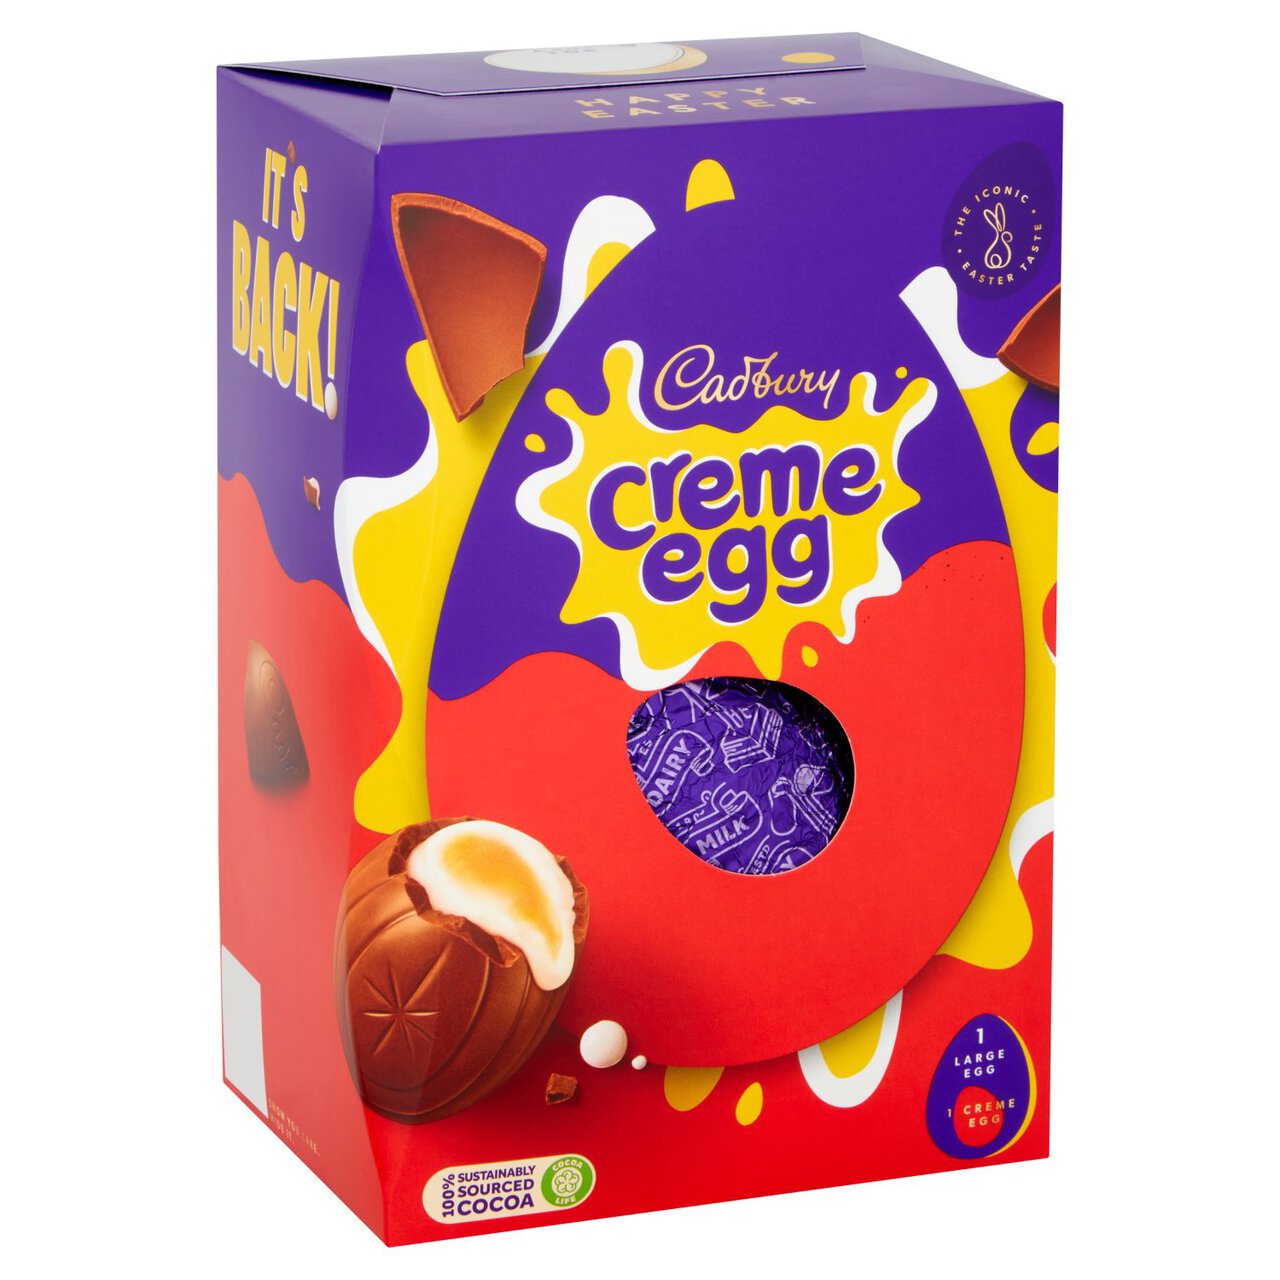 Cadbury Creme Egg Chocolate Easter Egg 195g